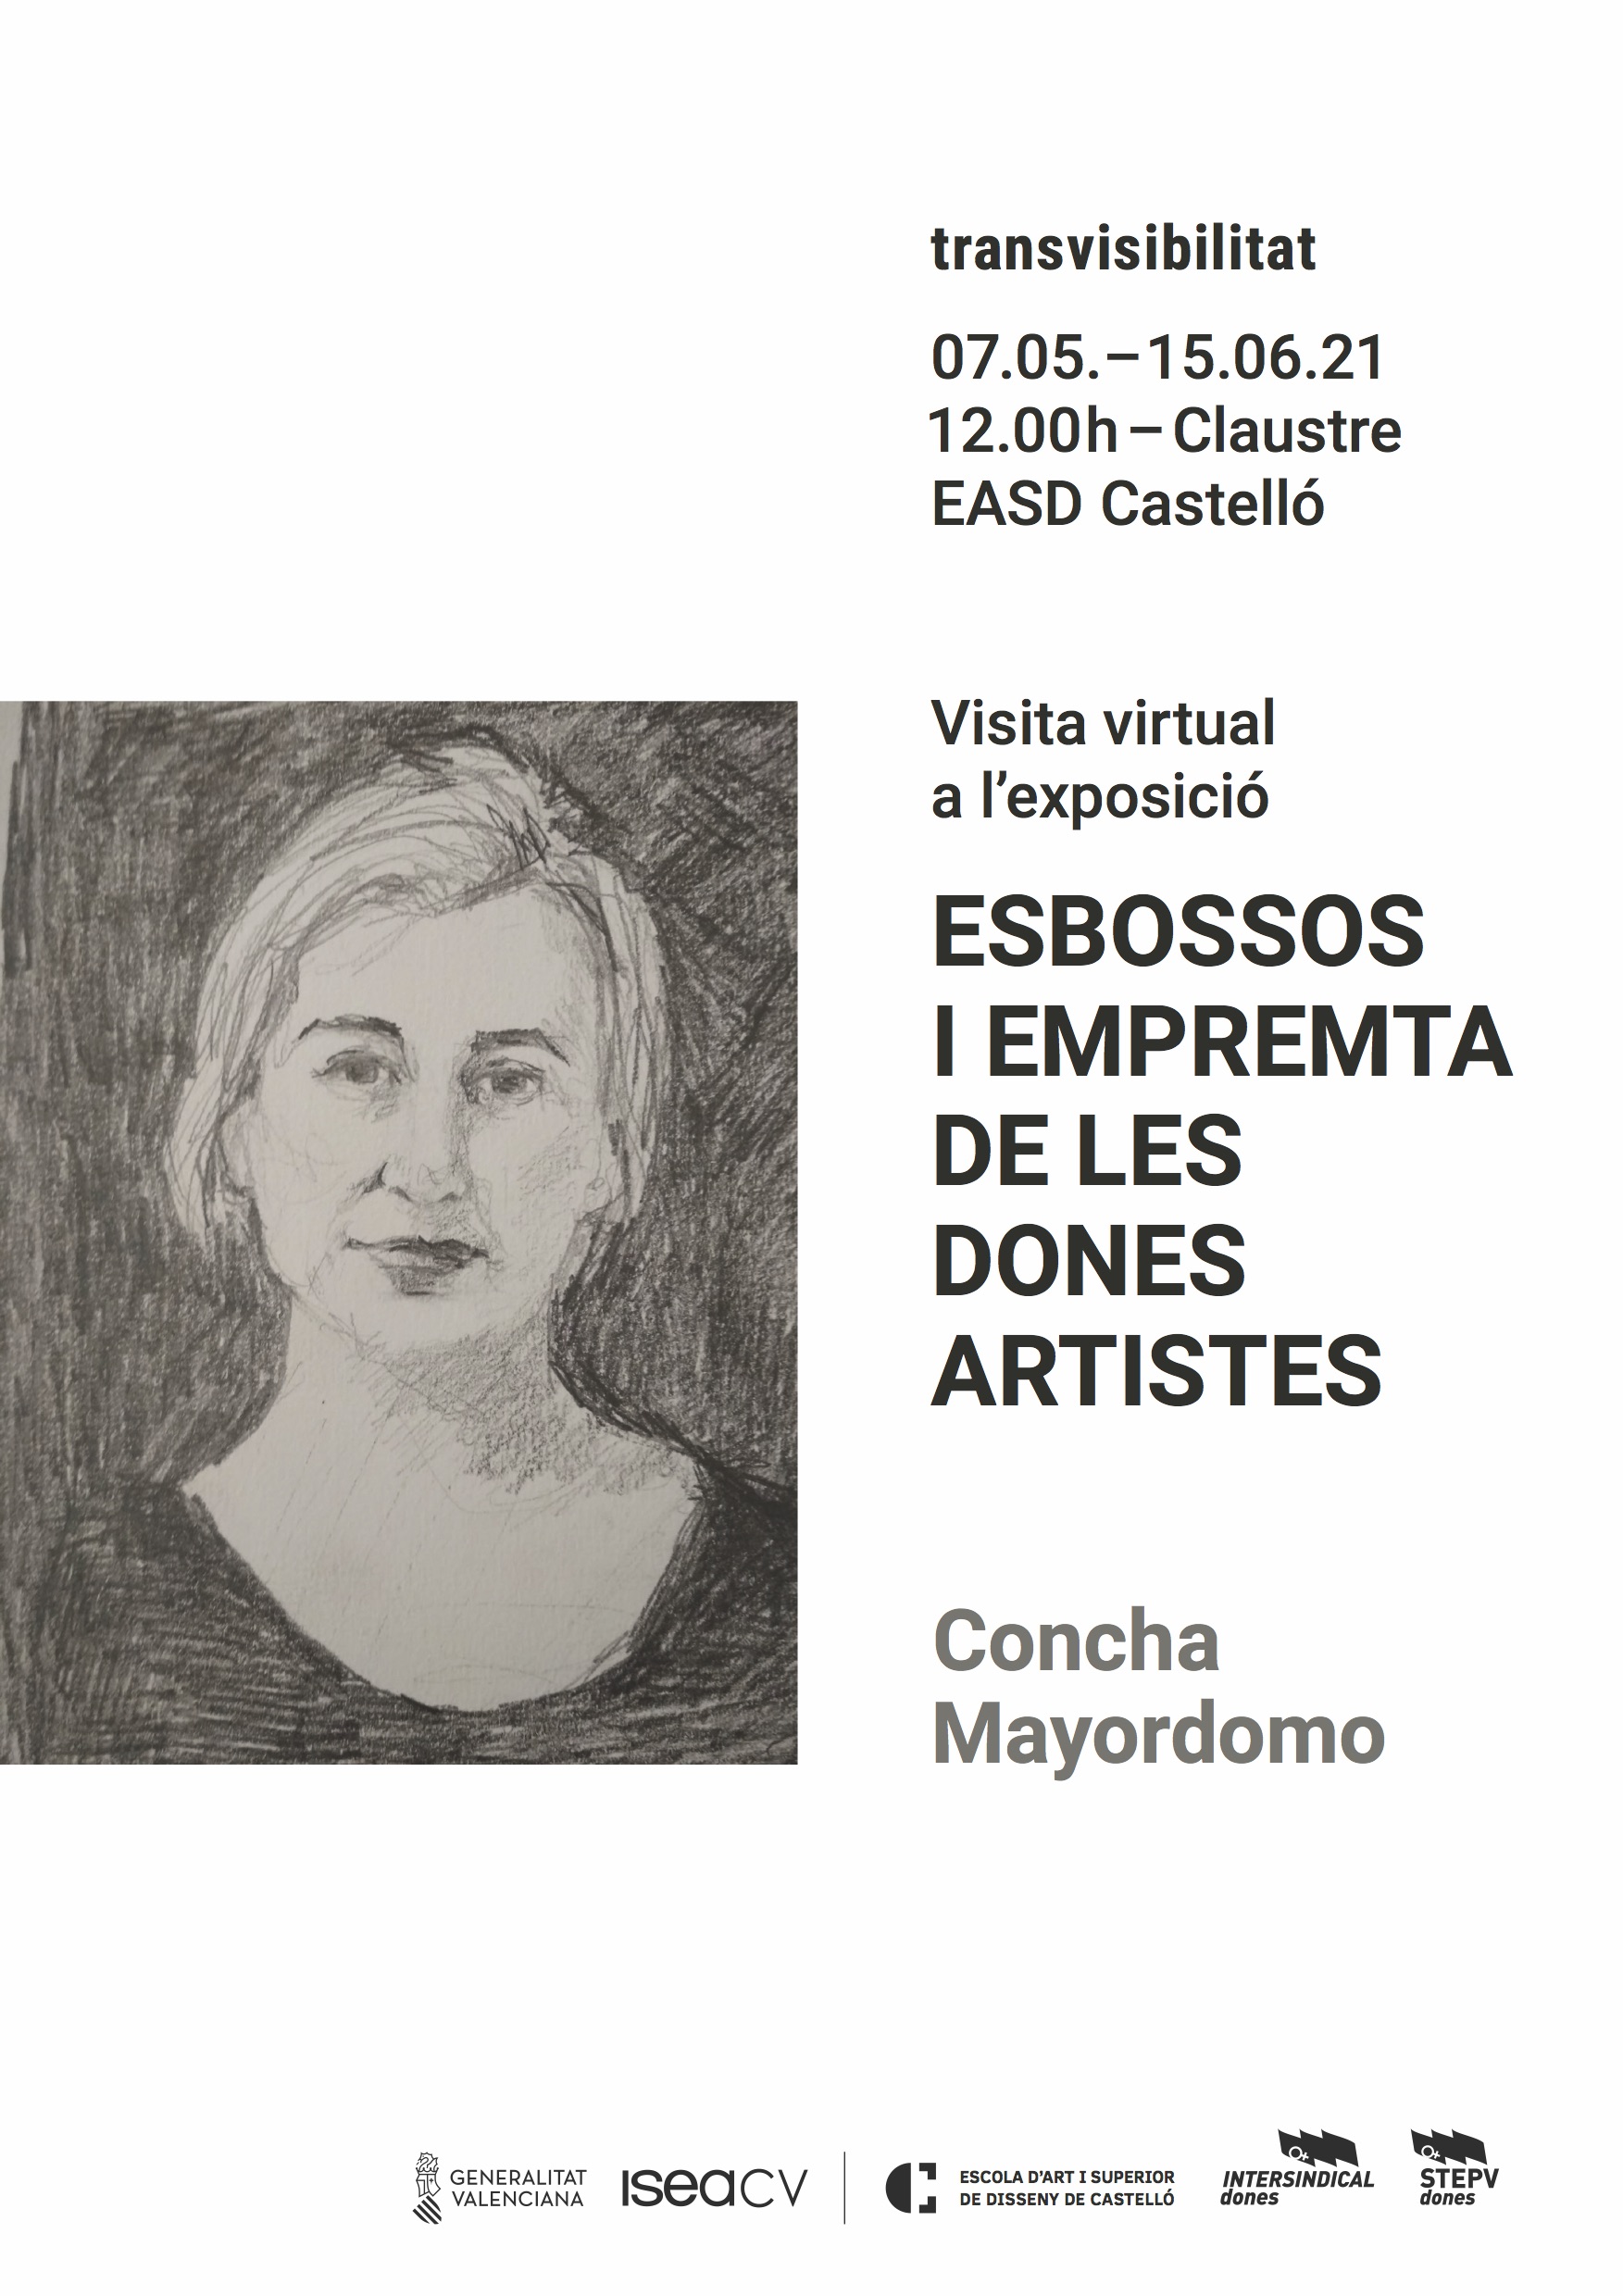 La artista Concha Mayordomo nos presenta a sus mujeres artistas en el claustro de l’Escola d’Art i Superior de Disseny de Castelló